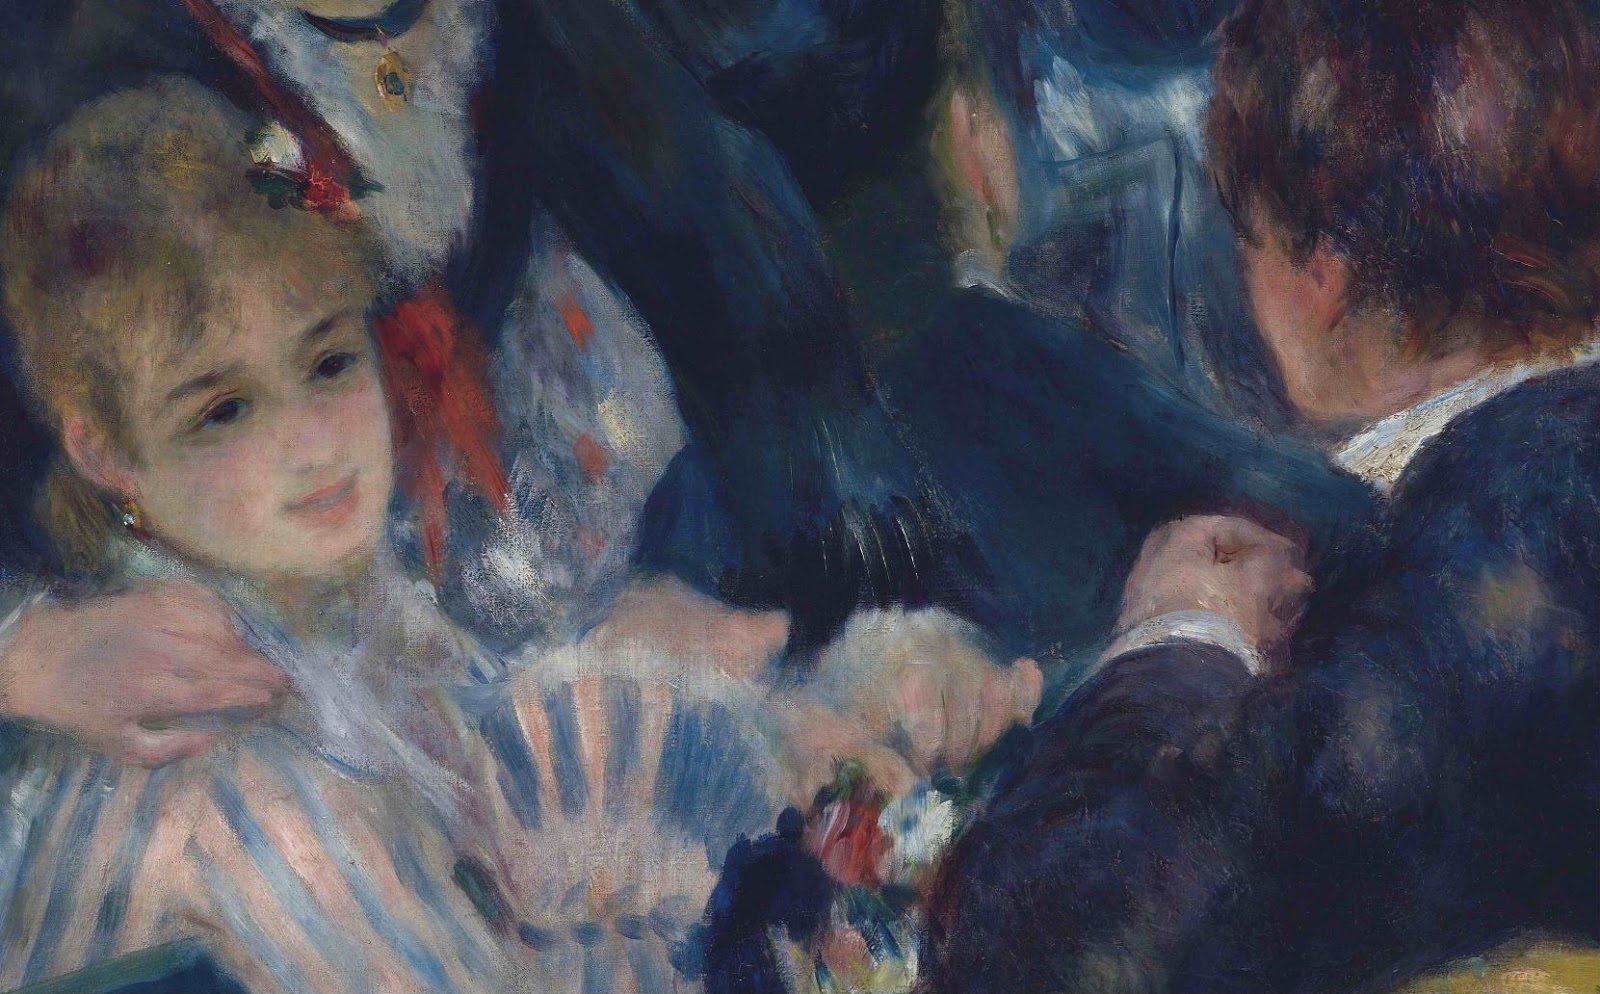 Pierre+Auguste+Renoir-1841-1-19 (426).JPG